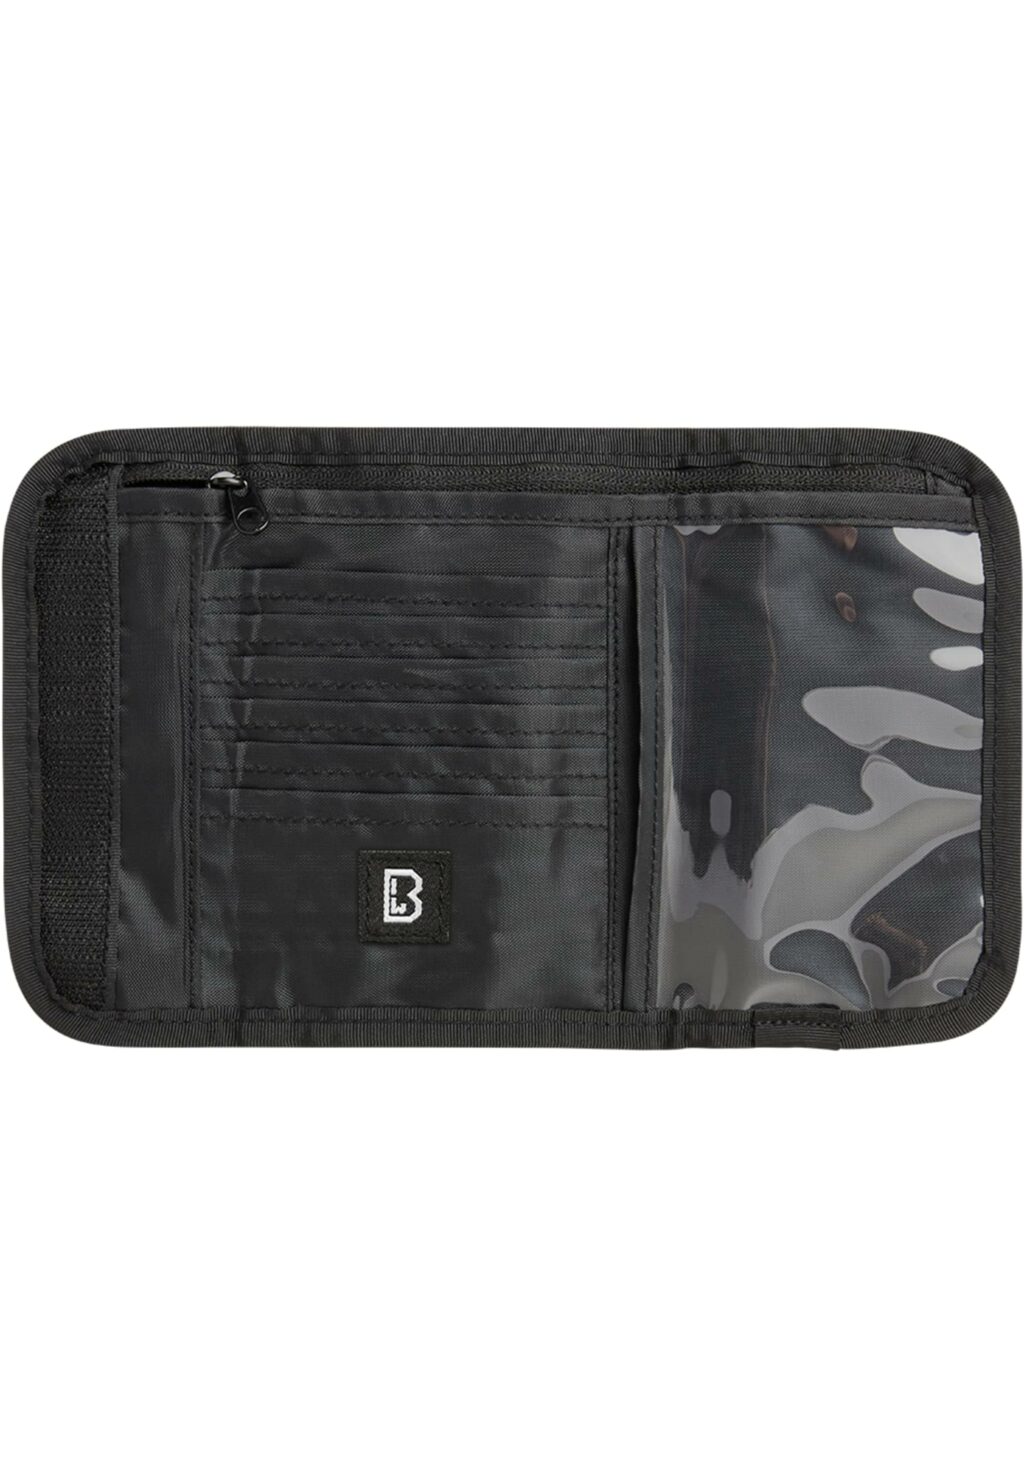 Brandit Wallet Two black one BD8064